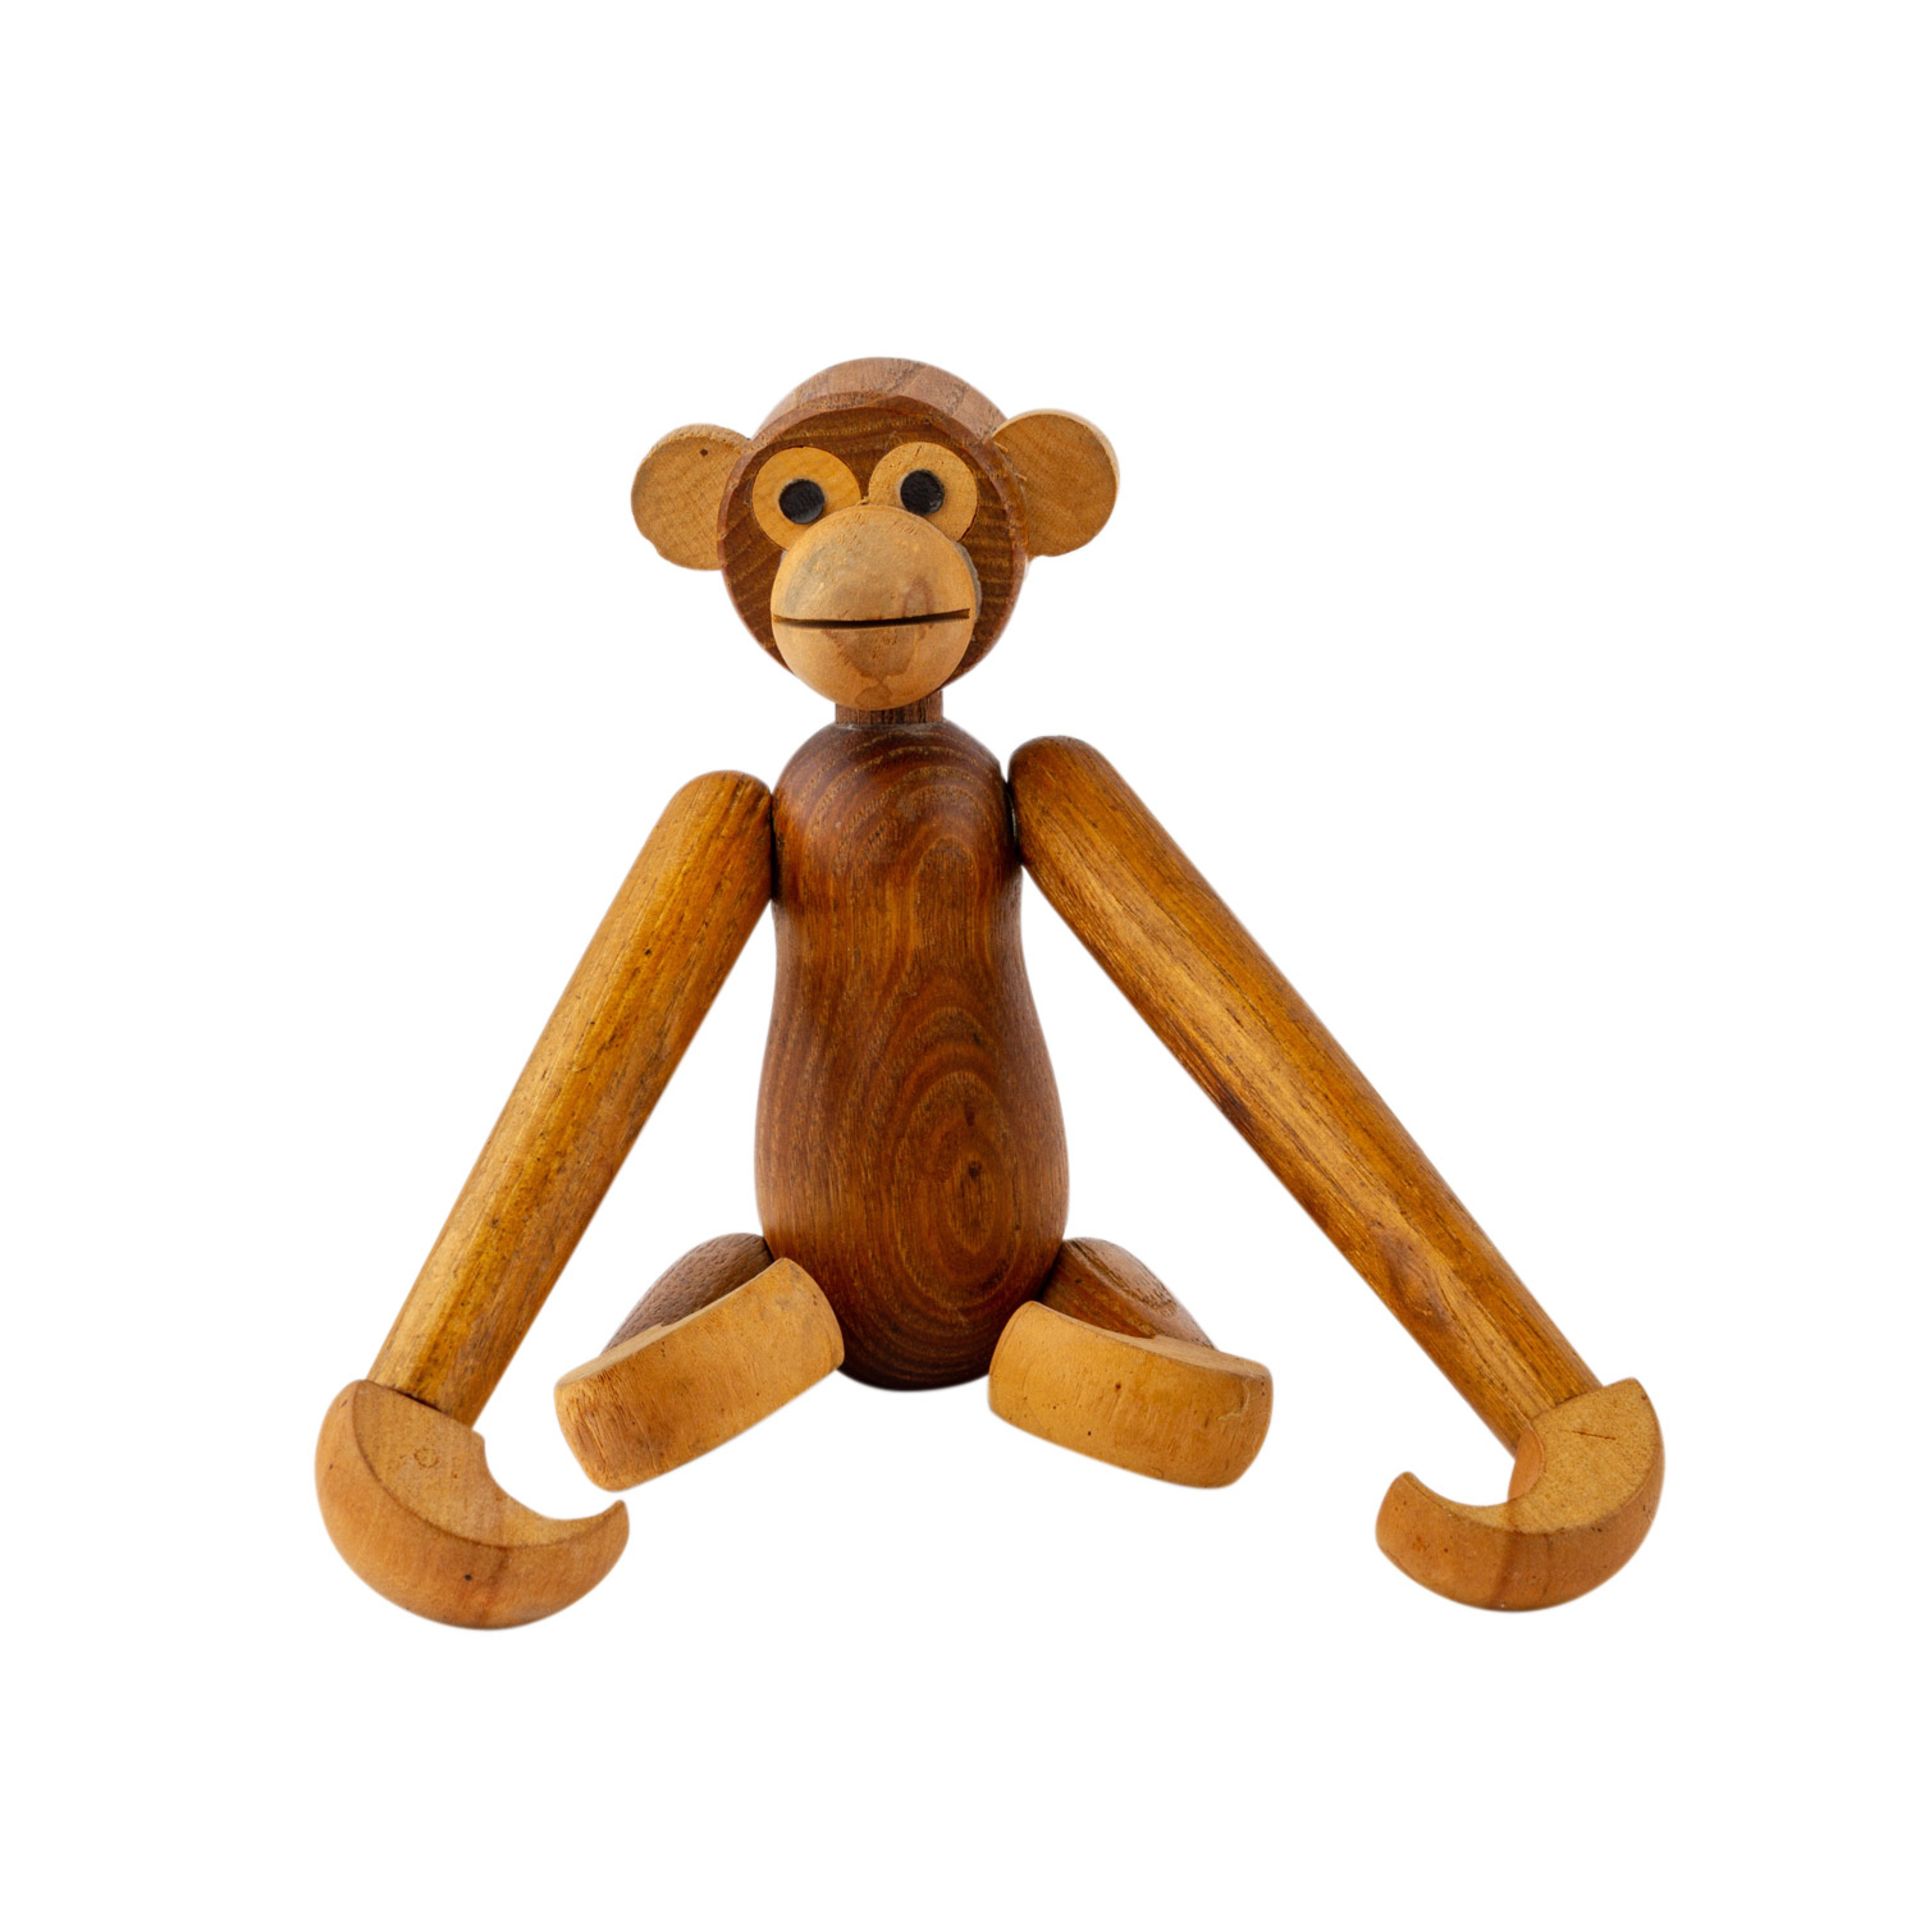 BOJESEN, KAY ( attribuiert) "Zwei Affen"50/60er Jahre, Teak-Holz Figur, H: 19 cm. Altersspuren. - Image 4 of 4